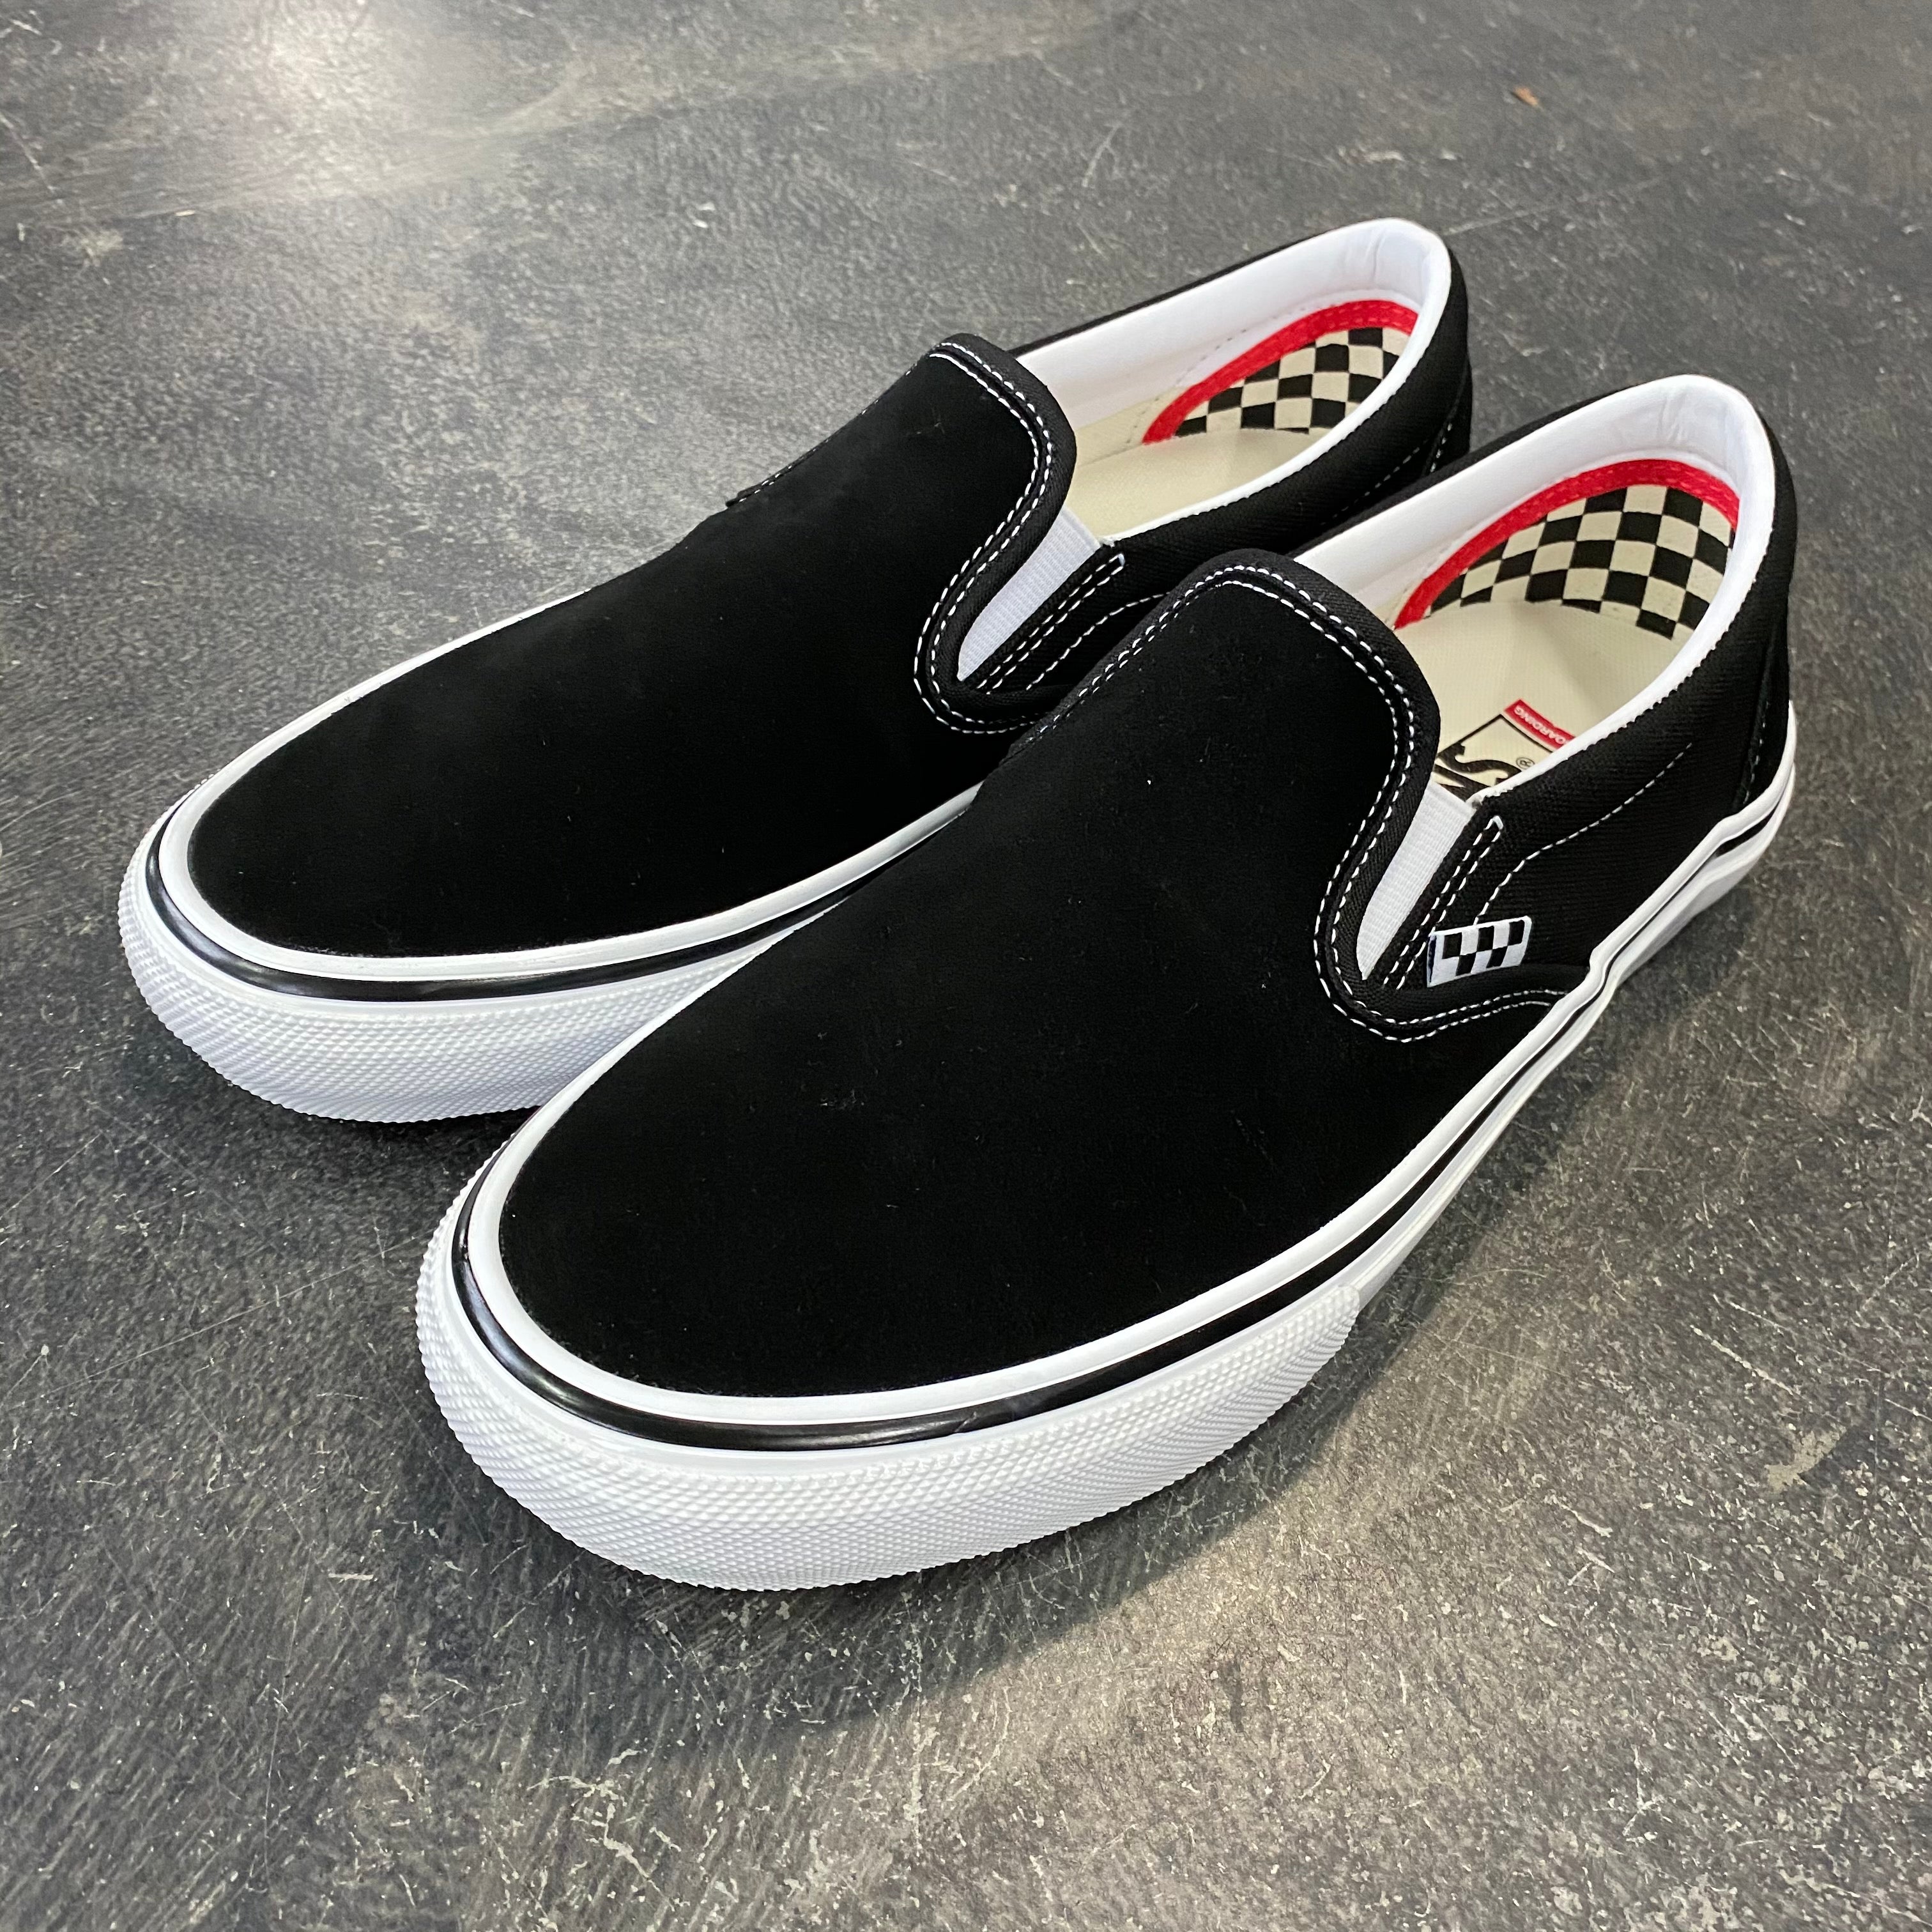 lineair Wild Geheim Vans Skate Slip On Black/White – 561 Skate